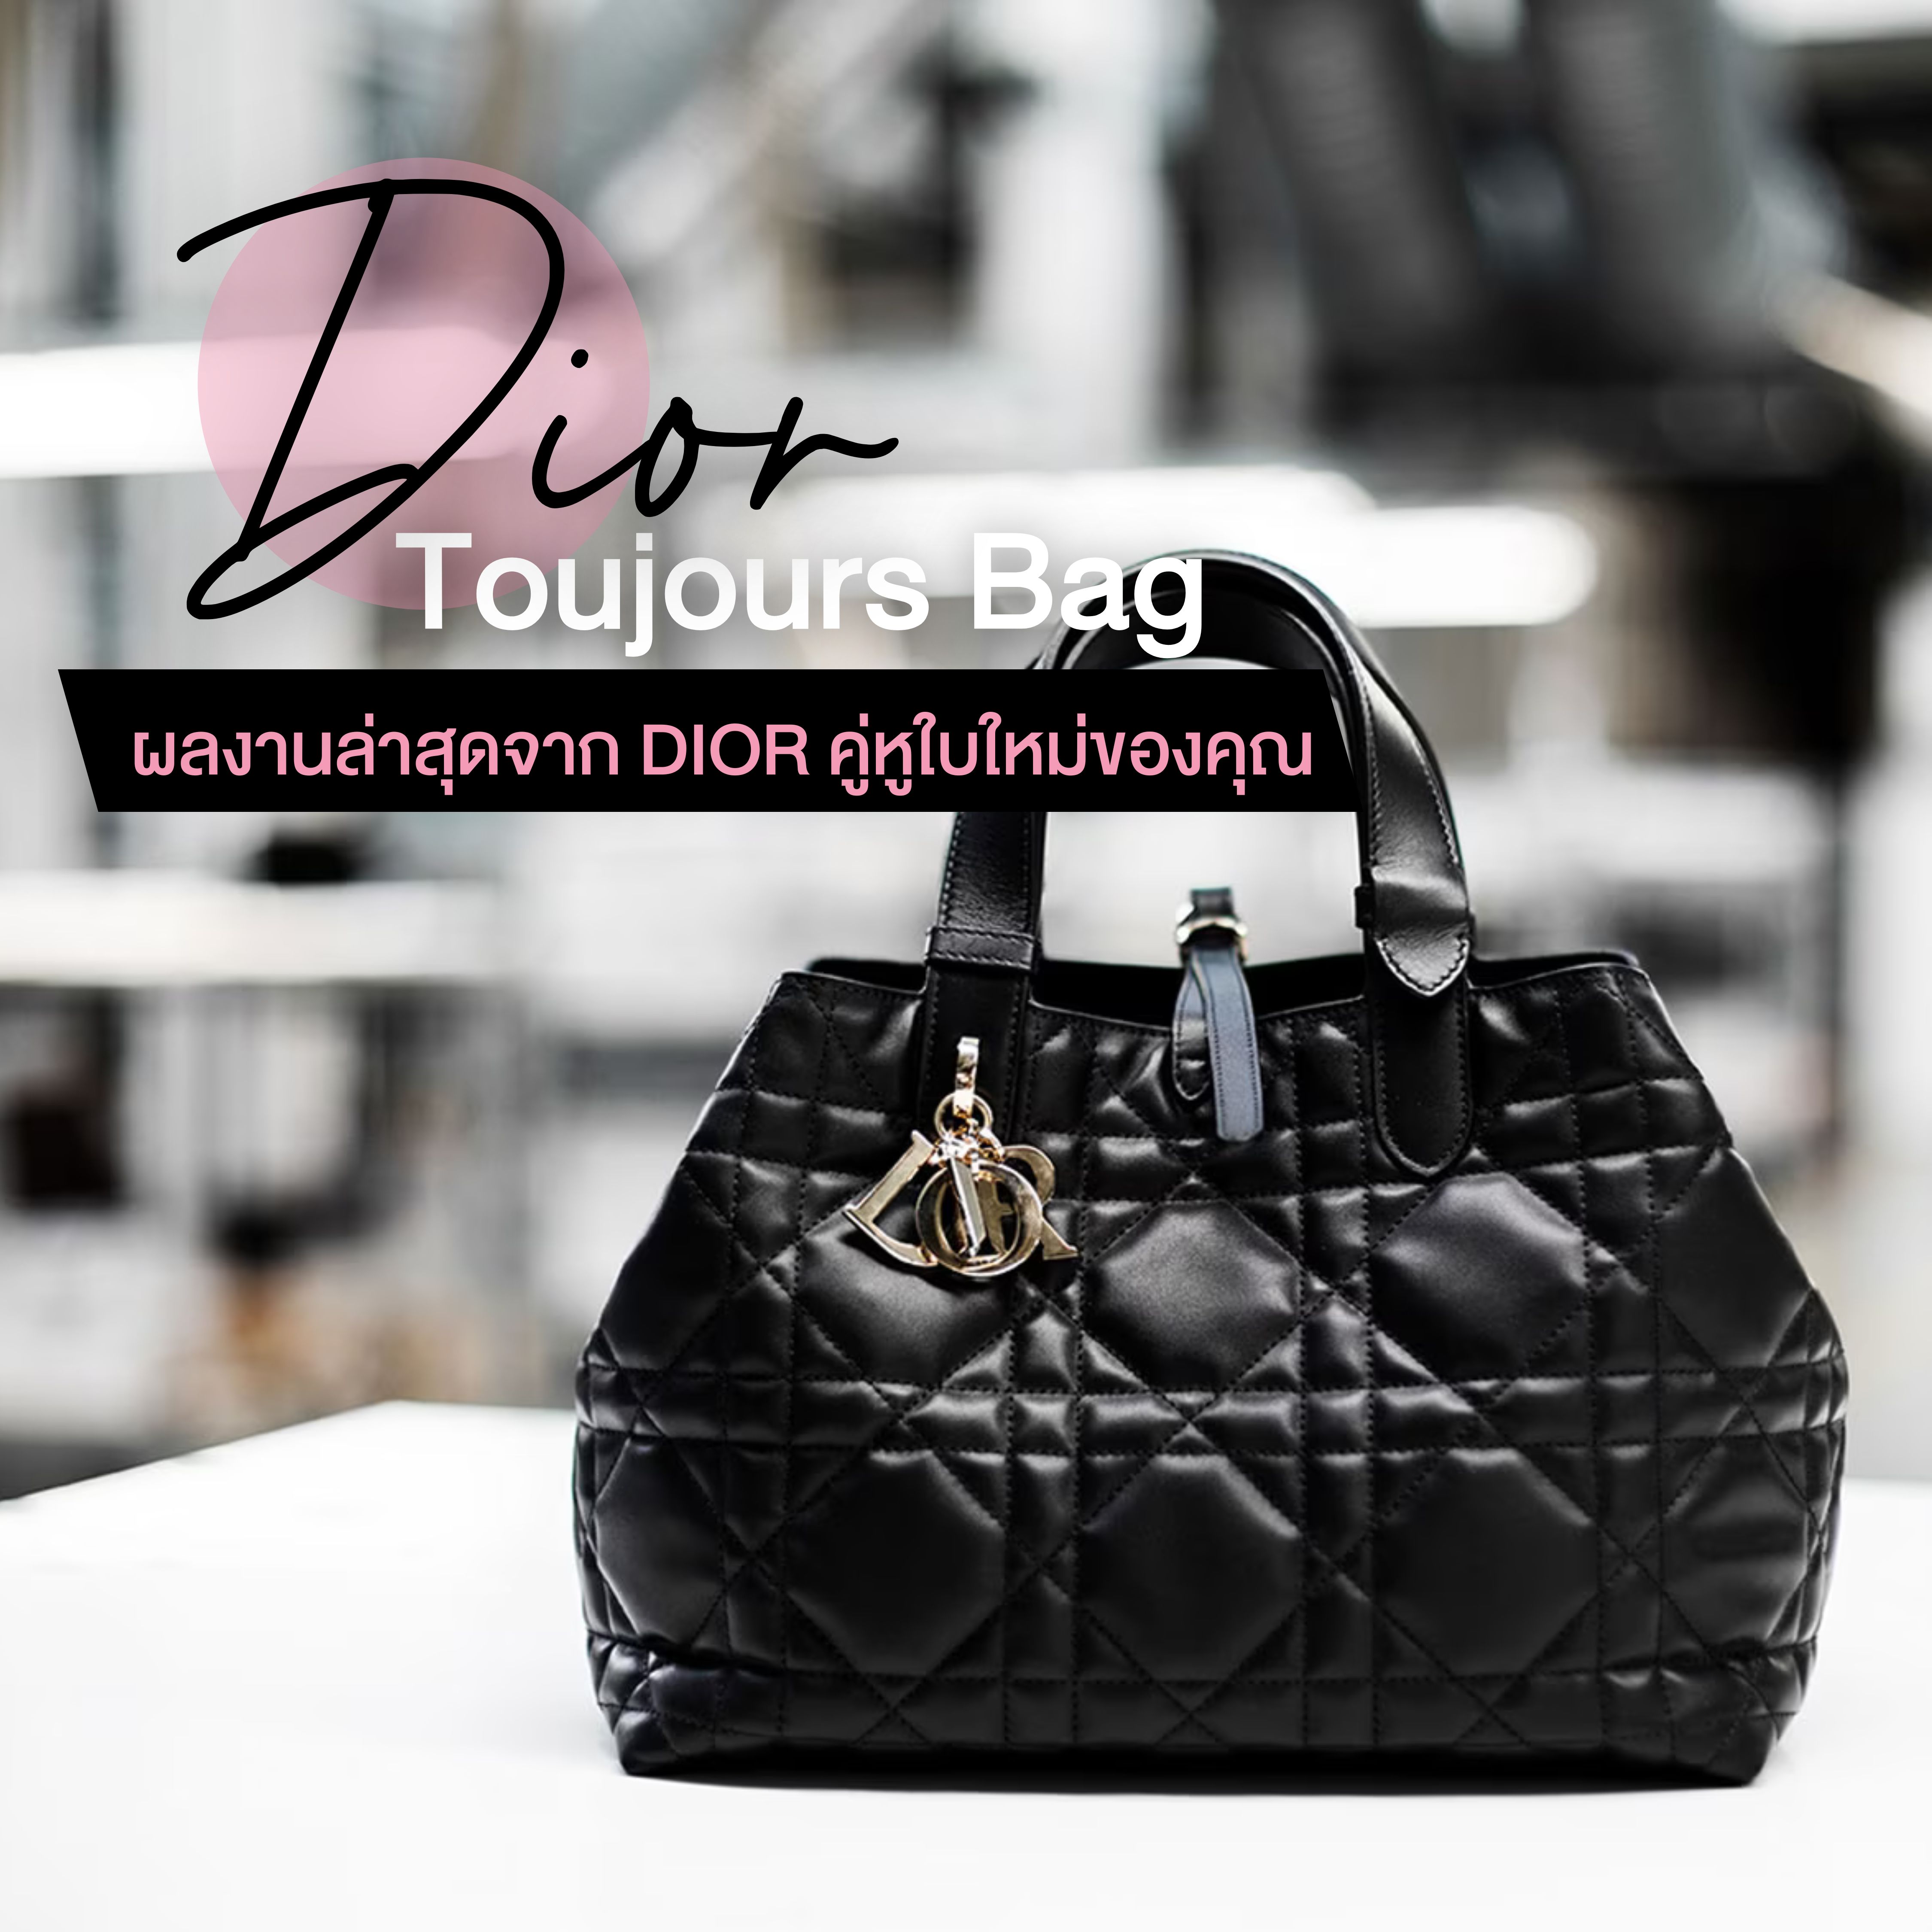 Dior Toujours bag ผลงานล่าสุดจาก Dior คู่หูใบใหม่ของคุณ